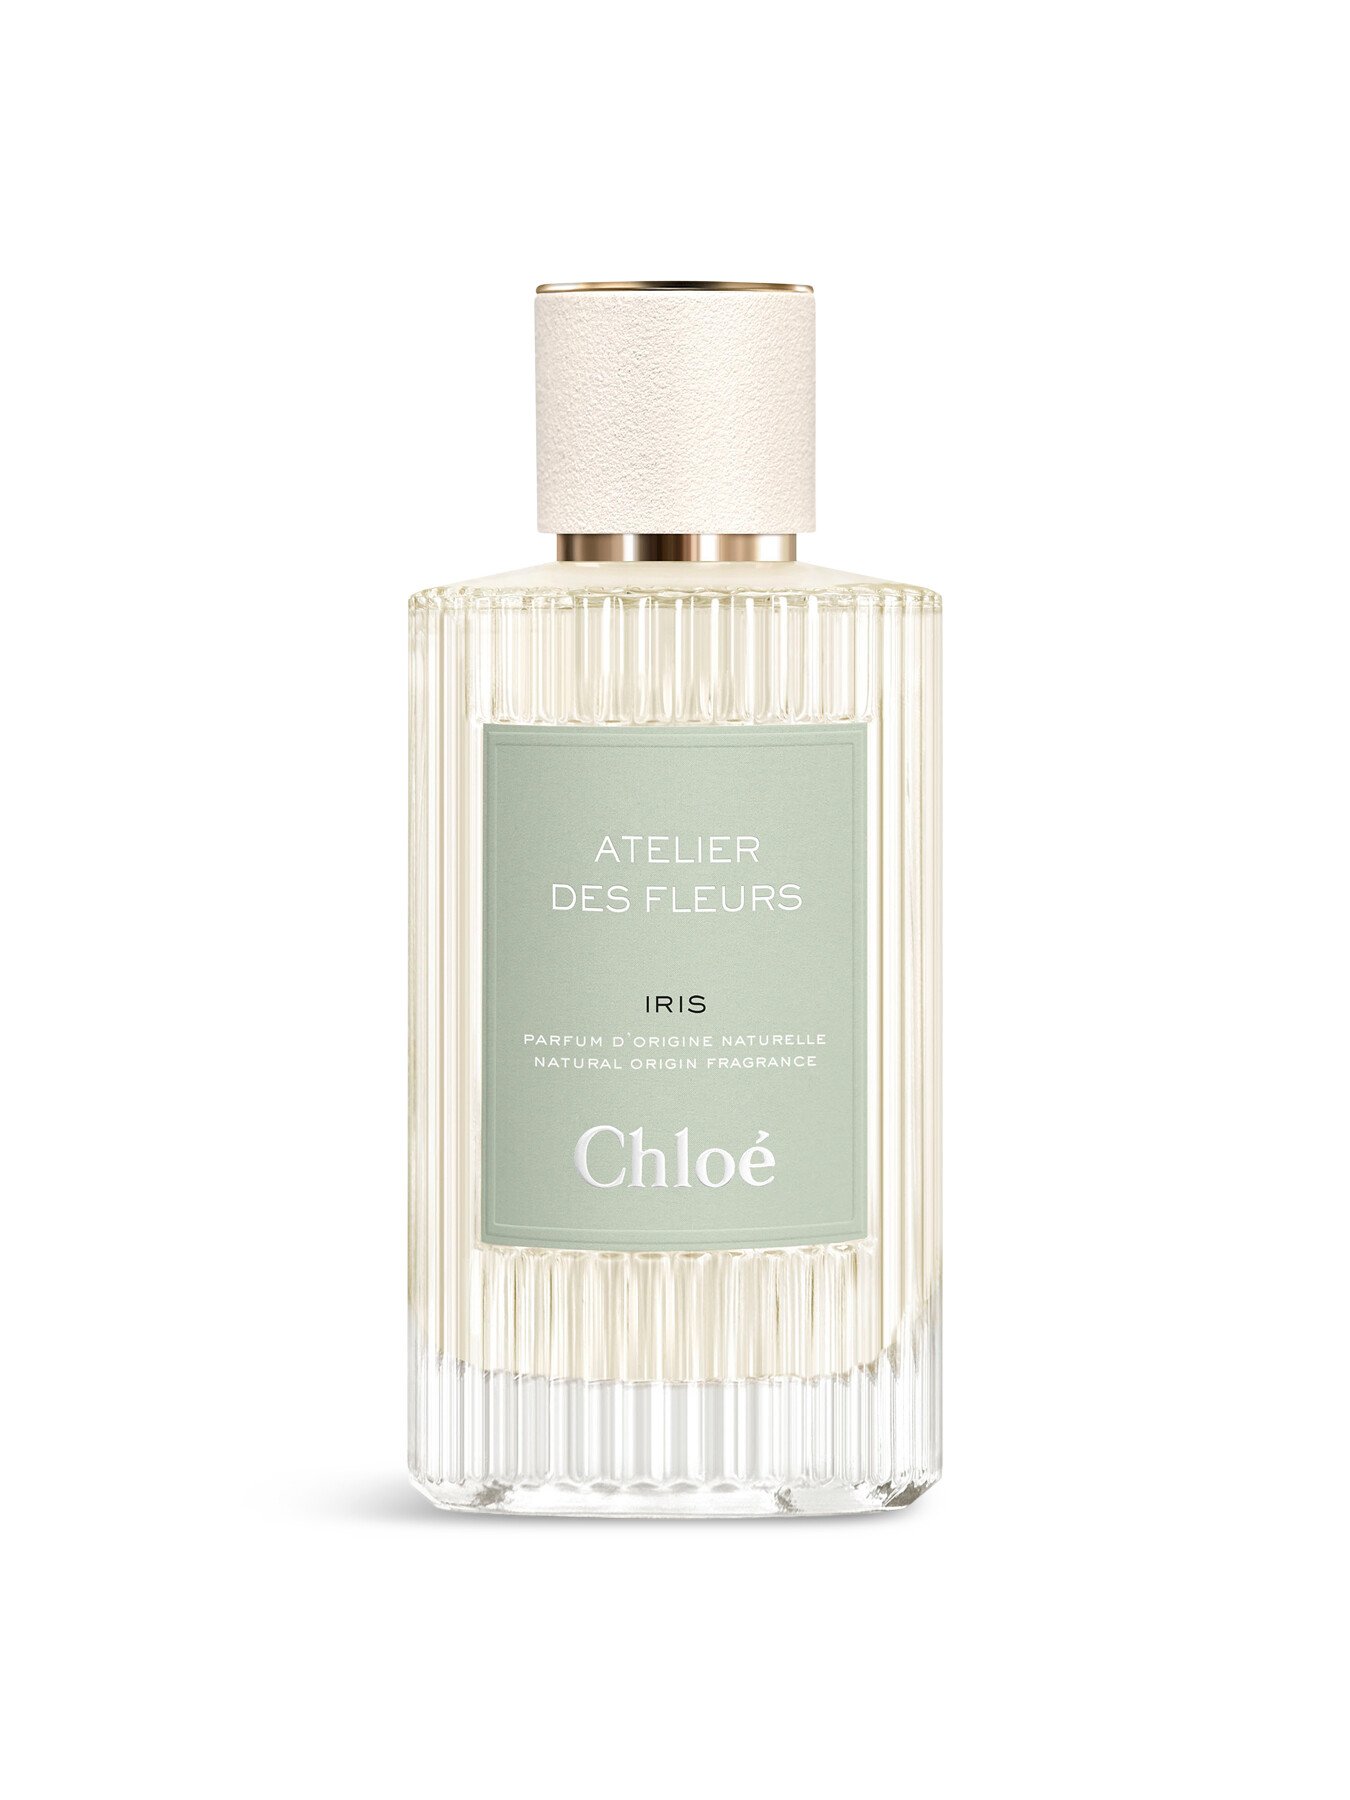 Chloé Atelier Des Fleurs Iris Eau De Parfum 150ml